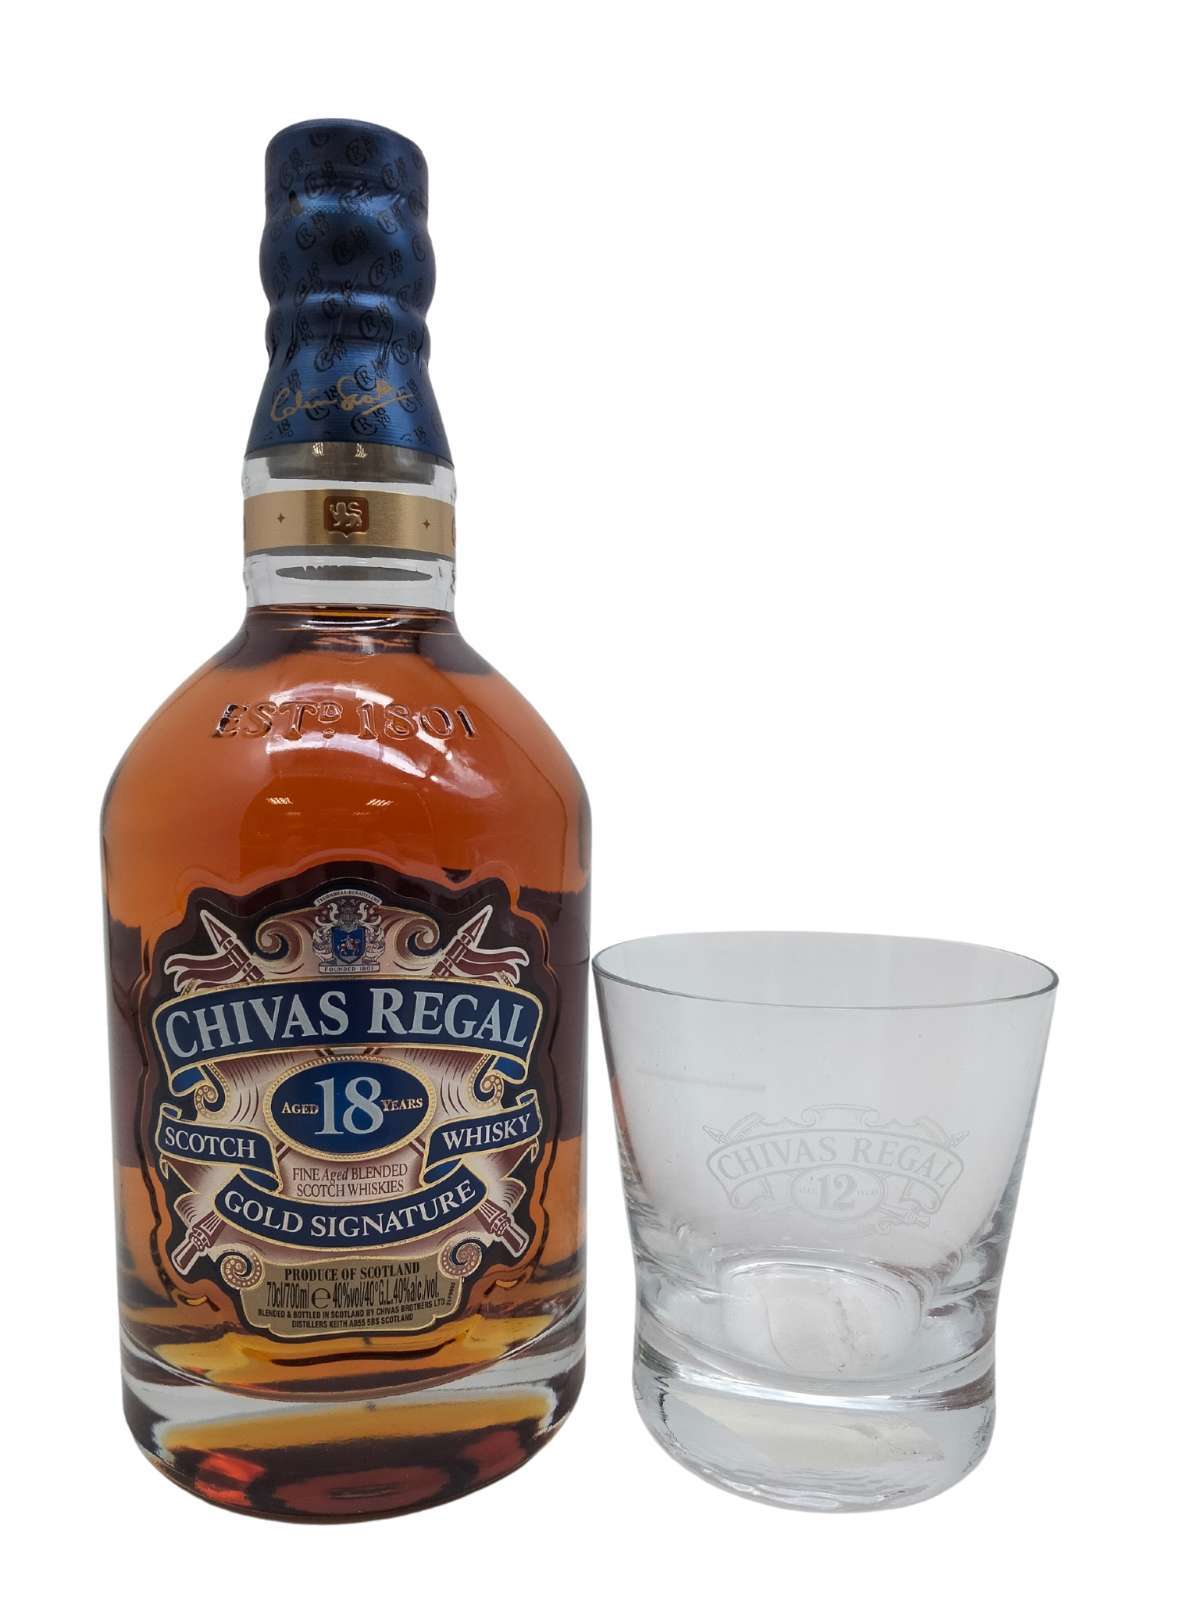 Chivas Regal 18 year old plus 6 branded Chivas Regal glasses, Whiskey  Bidders